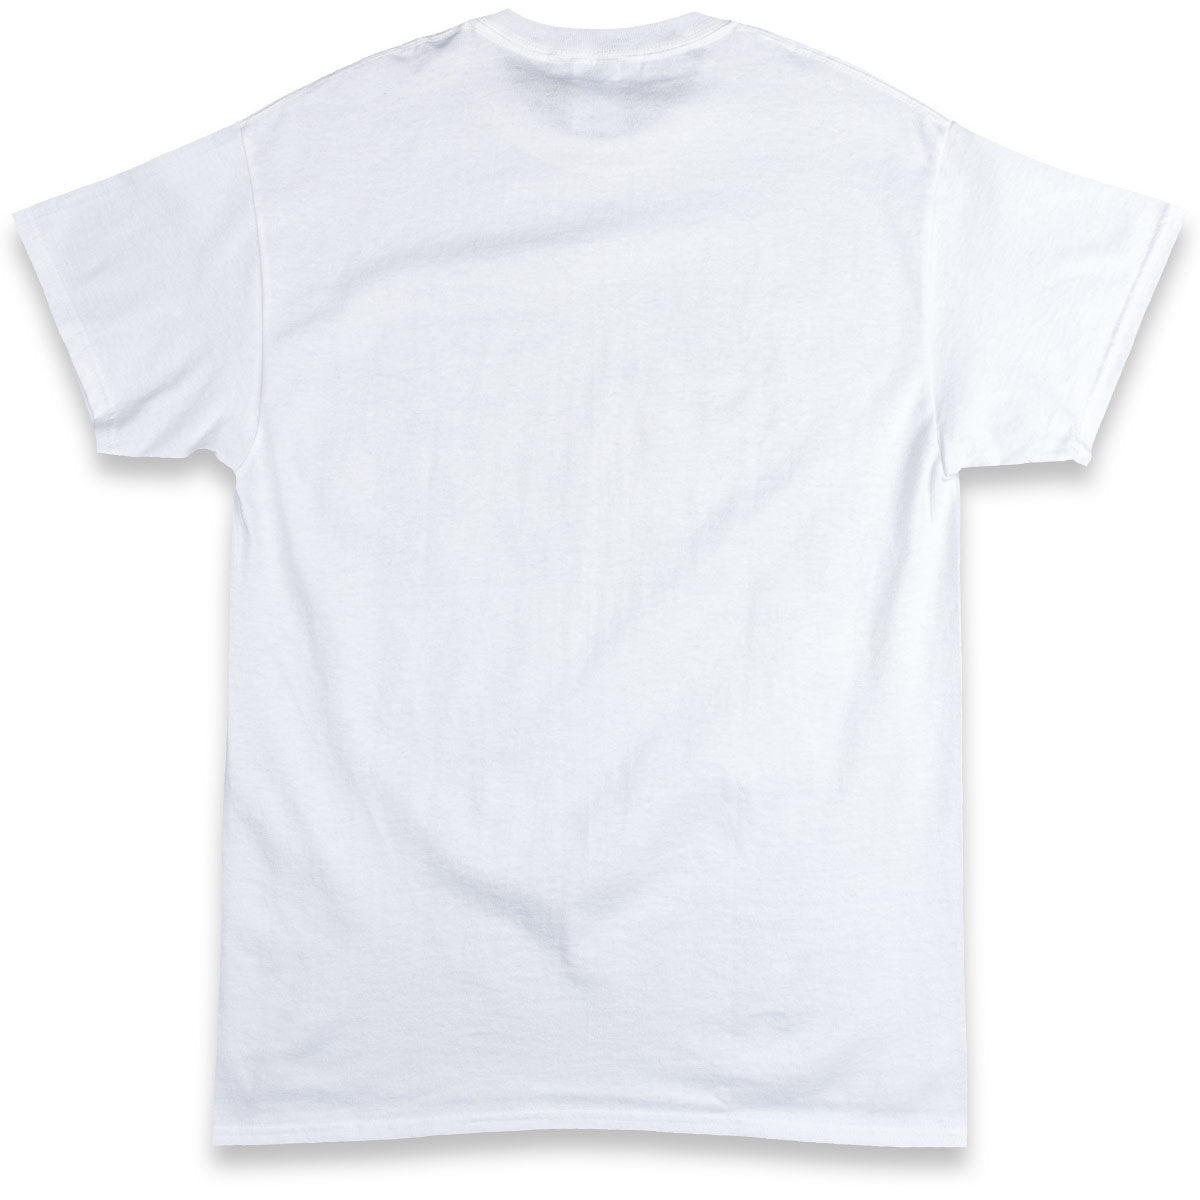 Thrasher Boyfriend T-Shirt - White image 2